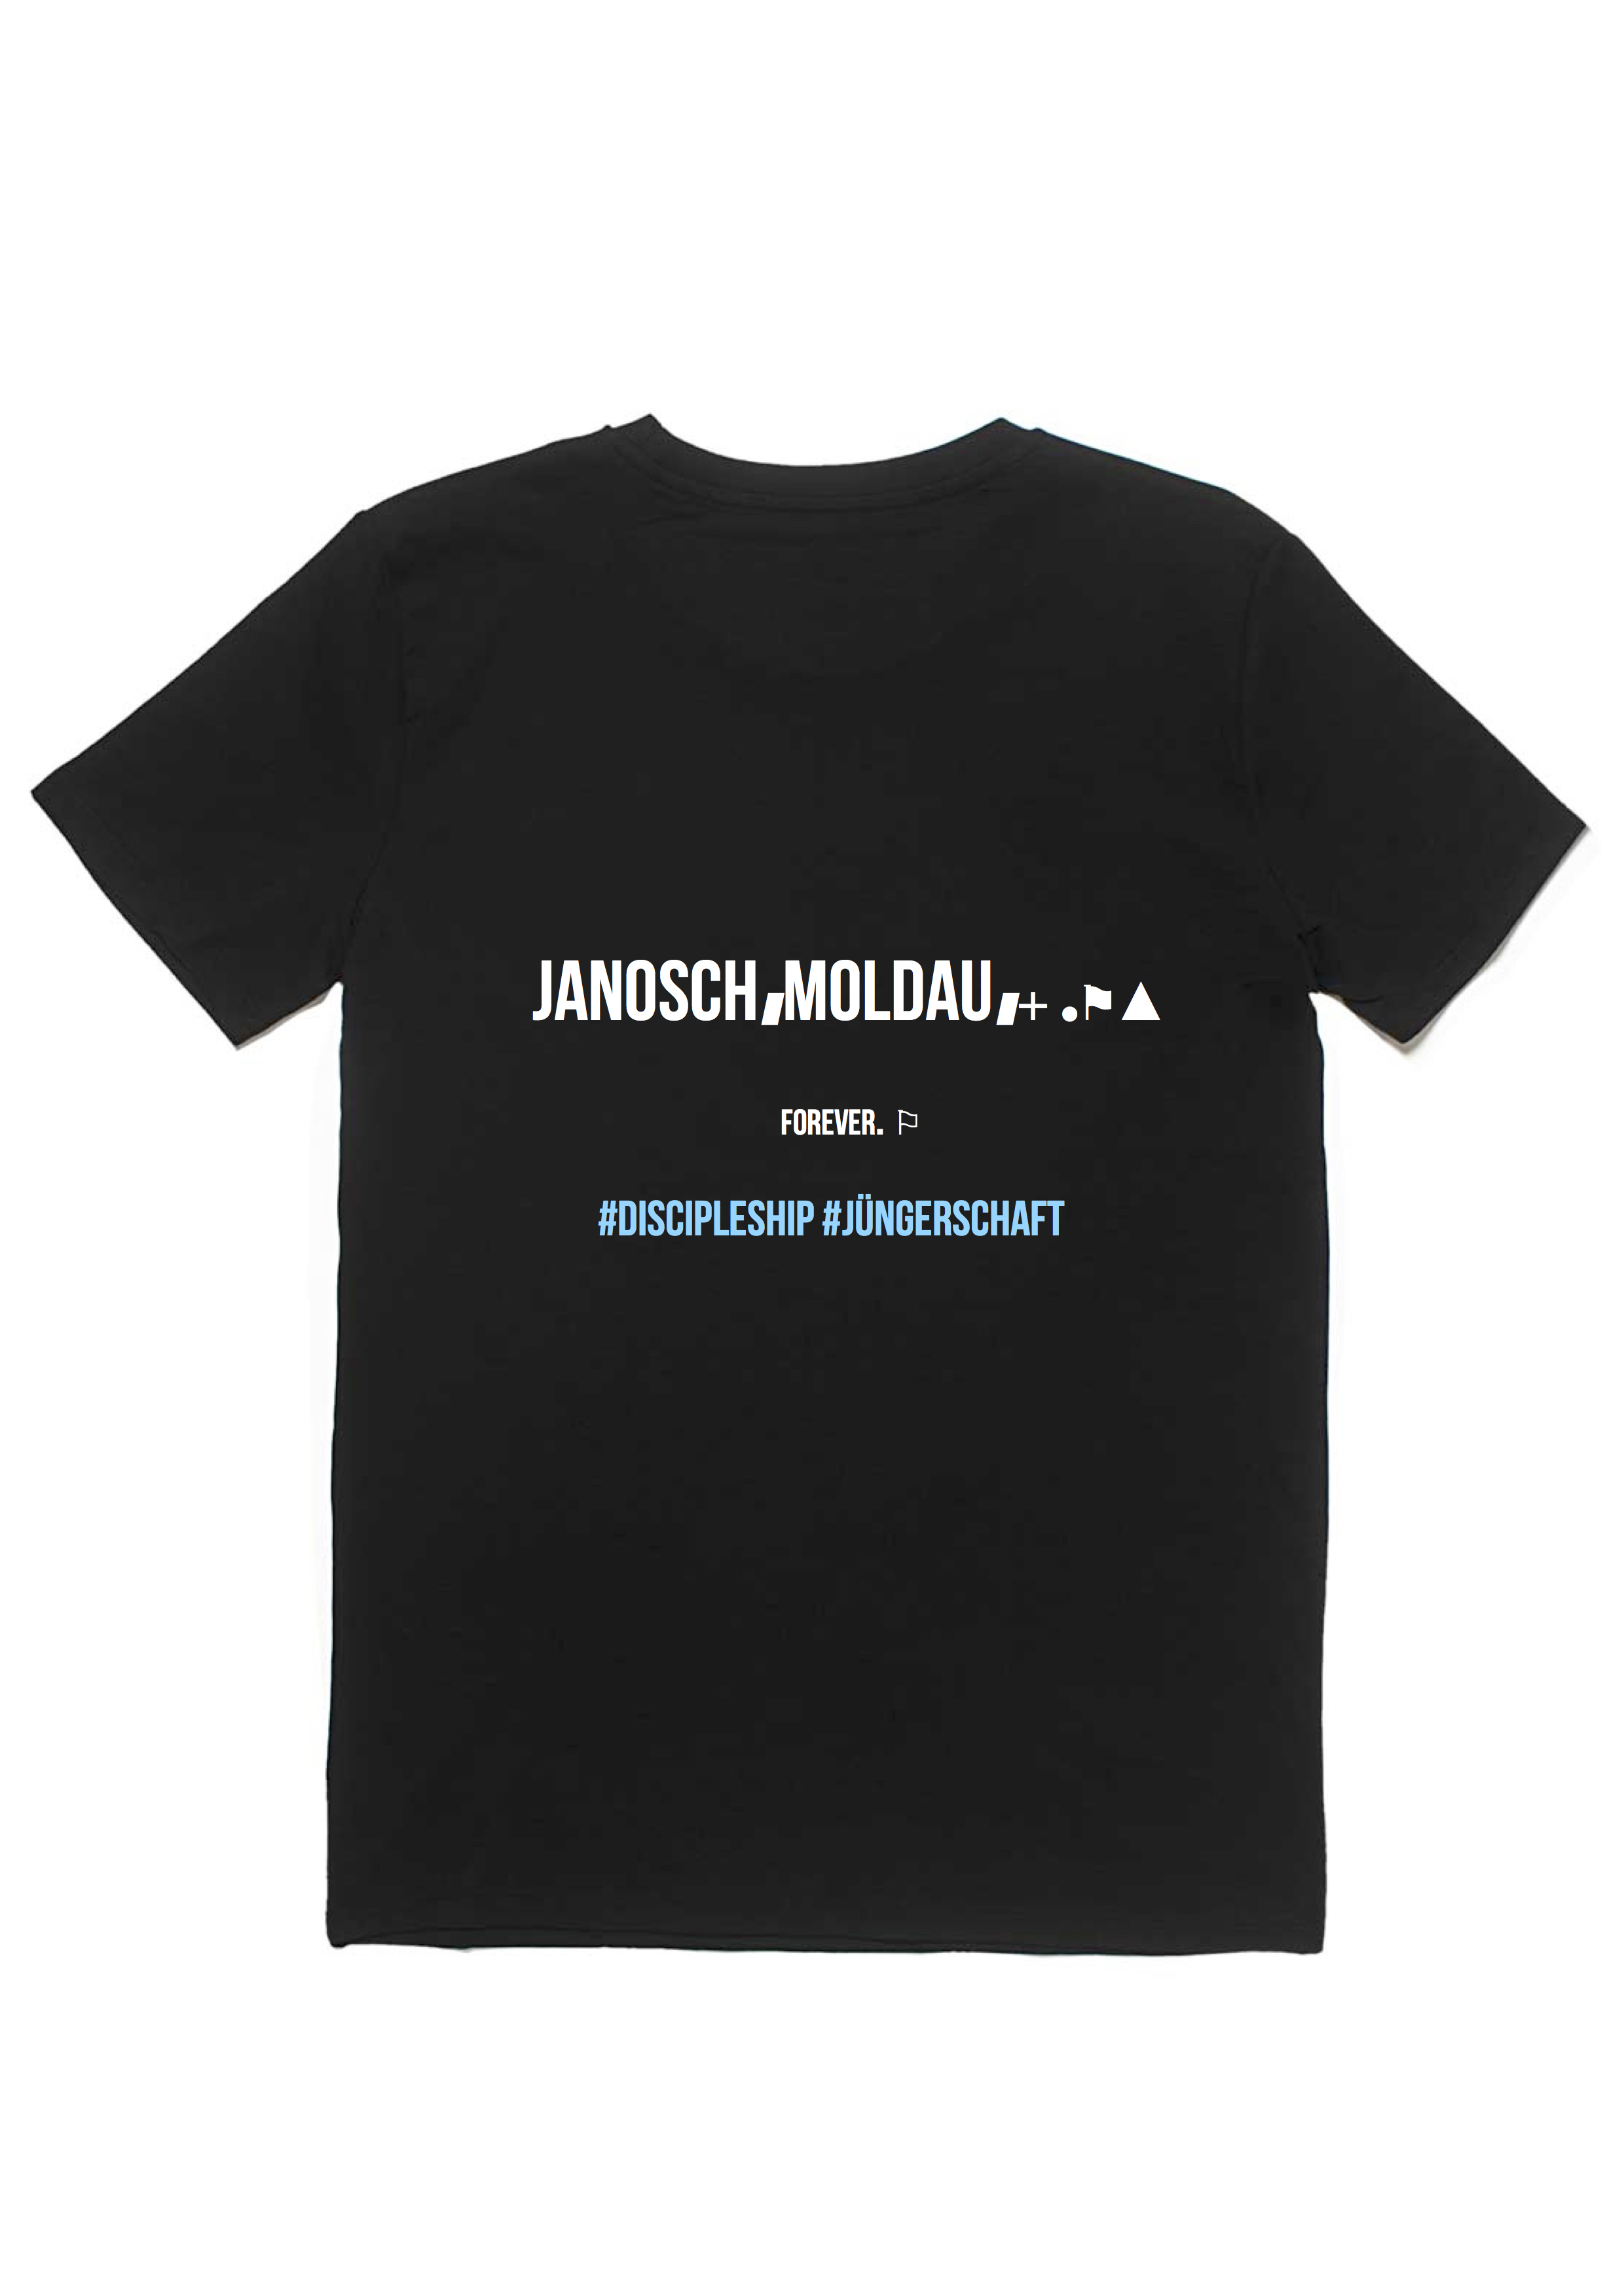 jm discipleship tshirt (special fanclub edition)